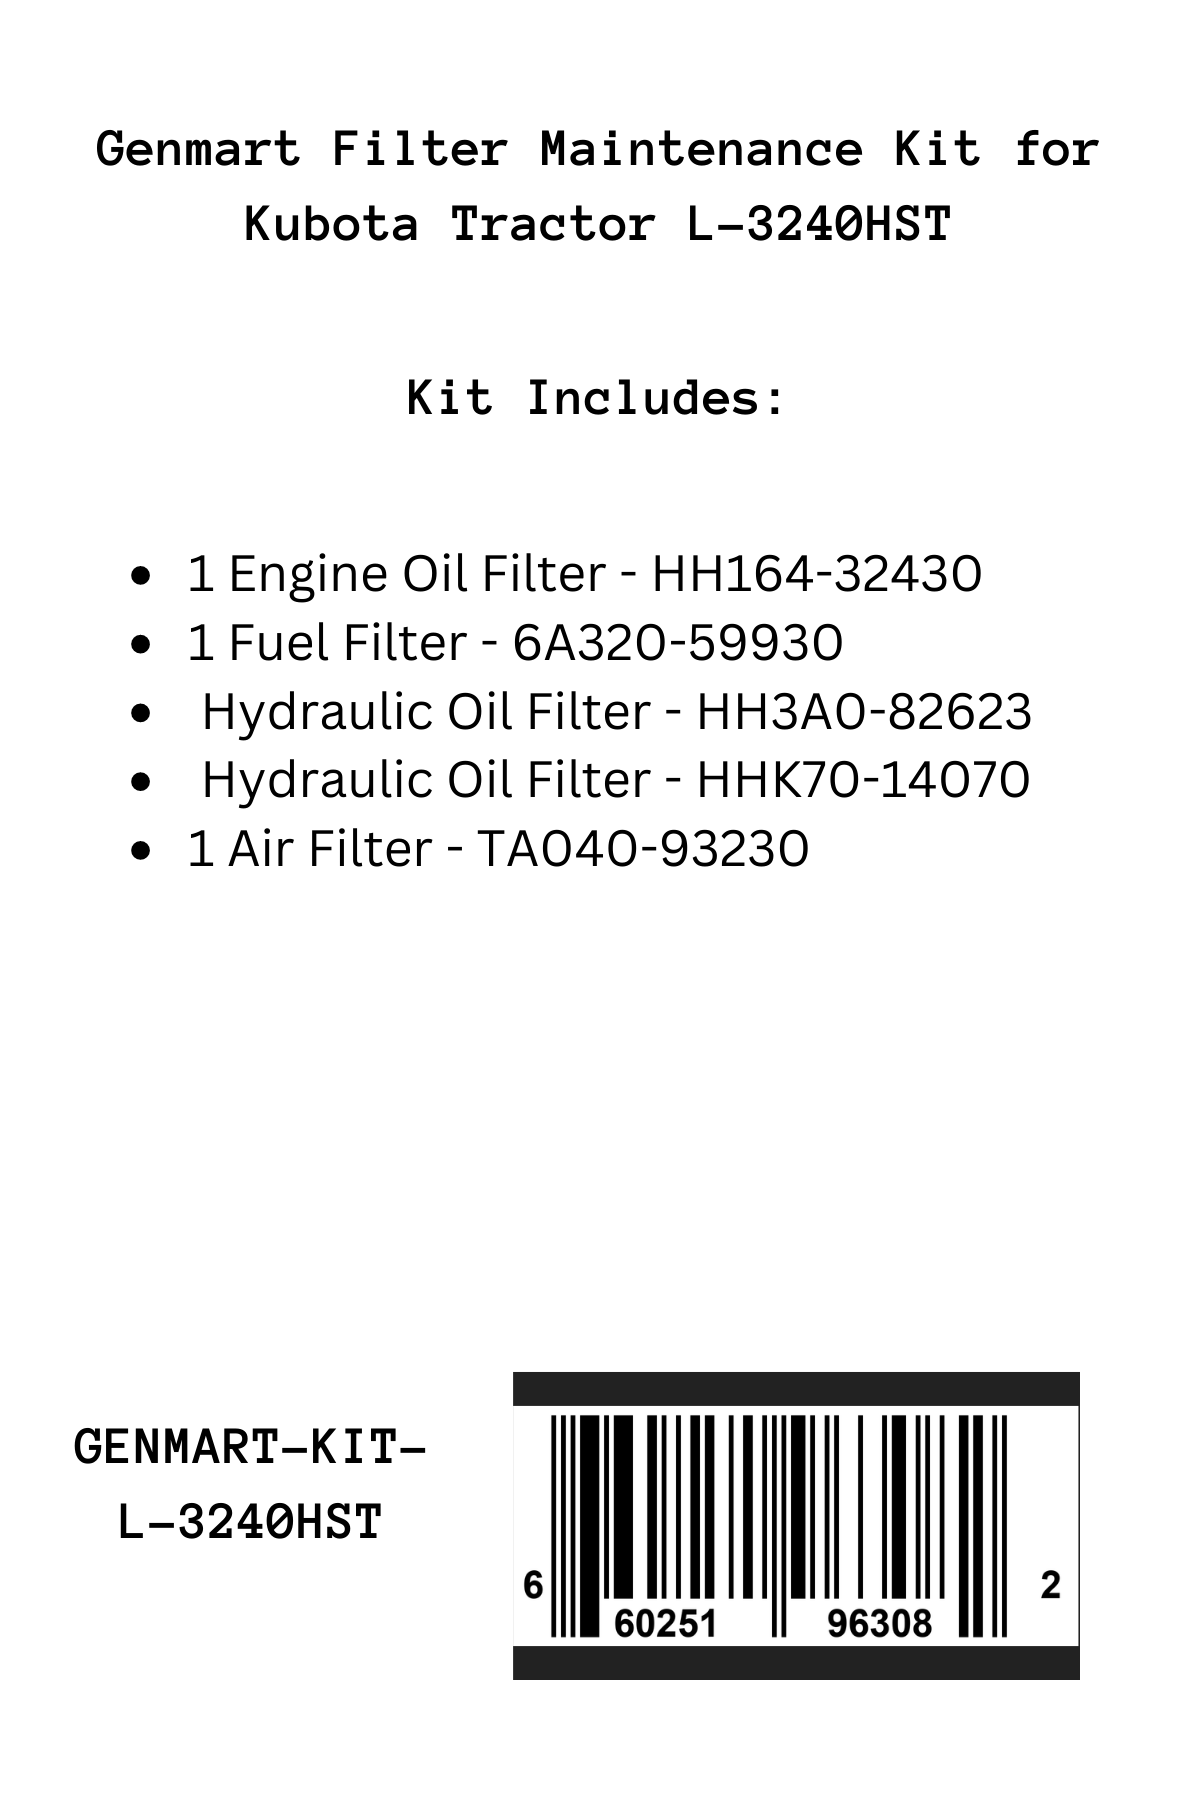 Genmart Maintenance Kit for Kubota Tractor L-3240HST